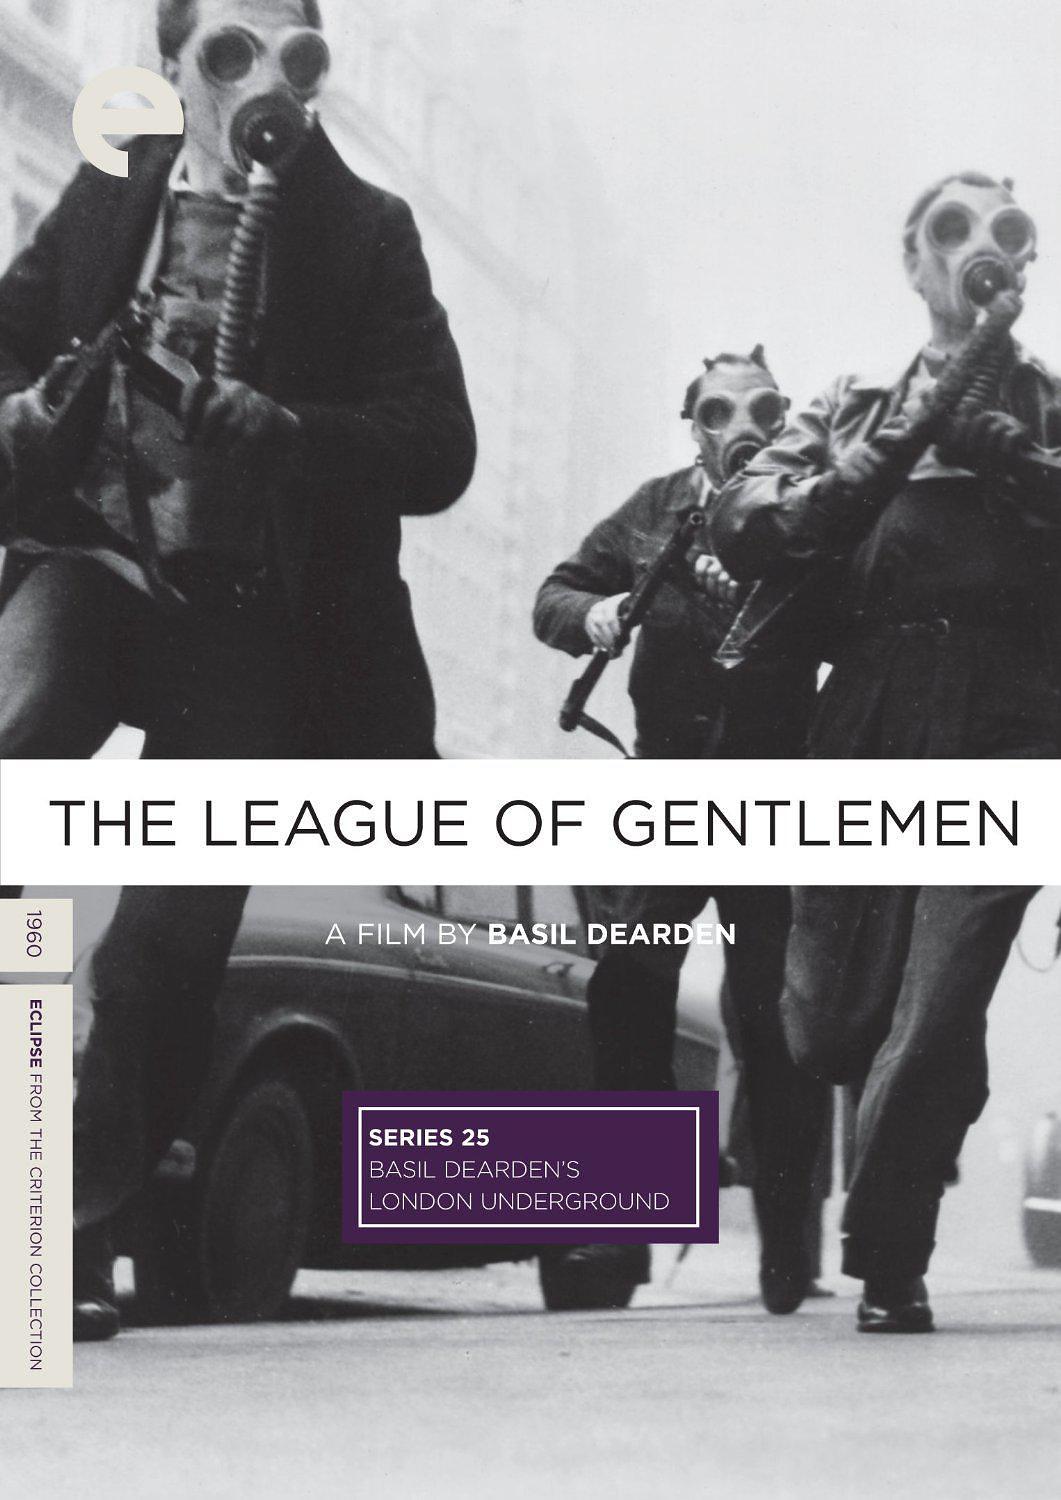 名流同盟/巴兹尔迪尔登的地下伦敦之名流同盟 The.League.of.Gentlemen.1960.1080p.BluRay.REMUX.AVC.LPCM.2.0-FGT 22.28GB-1.png